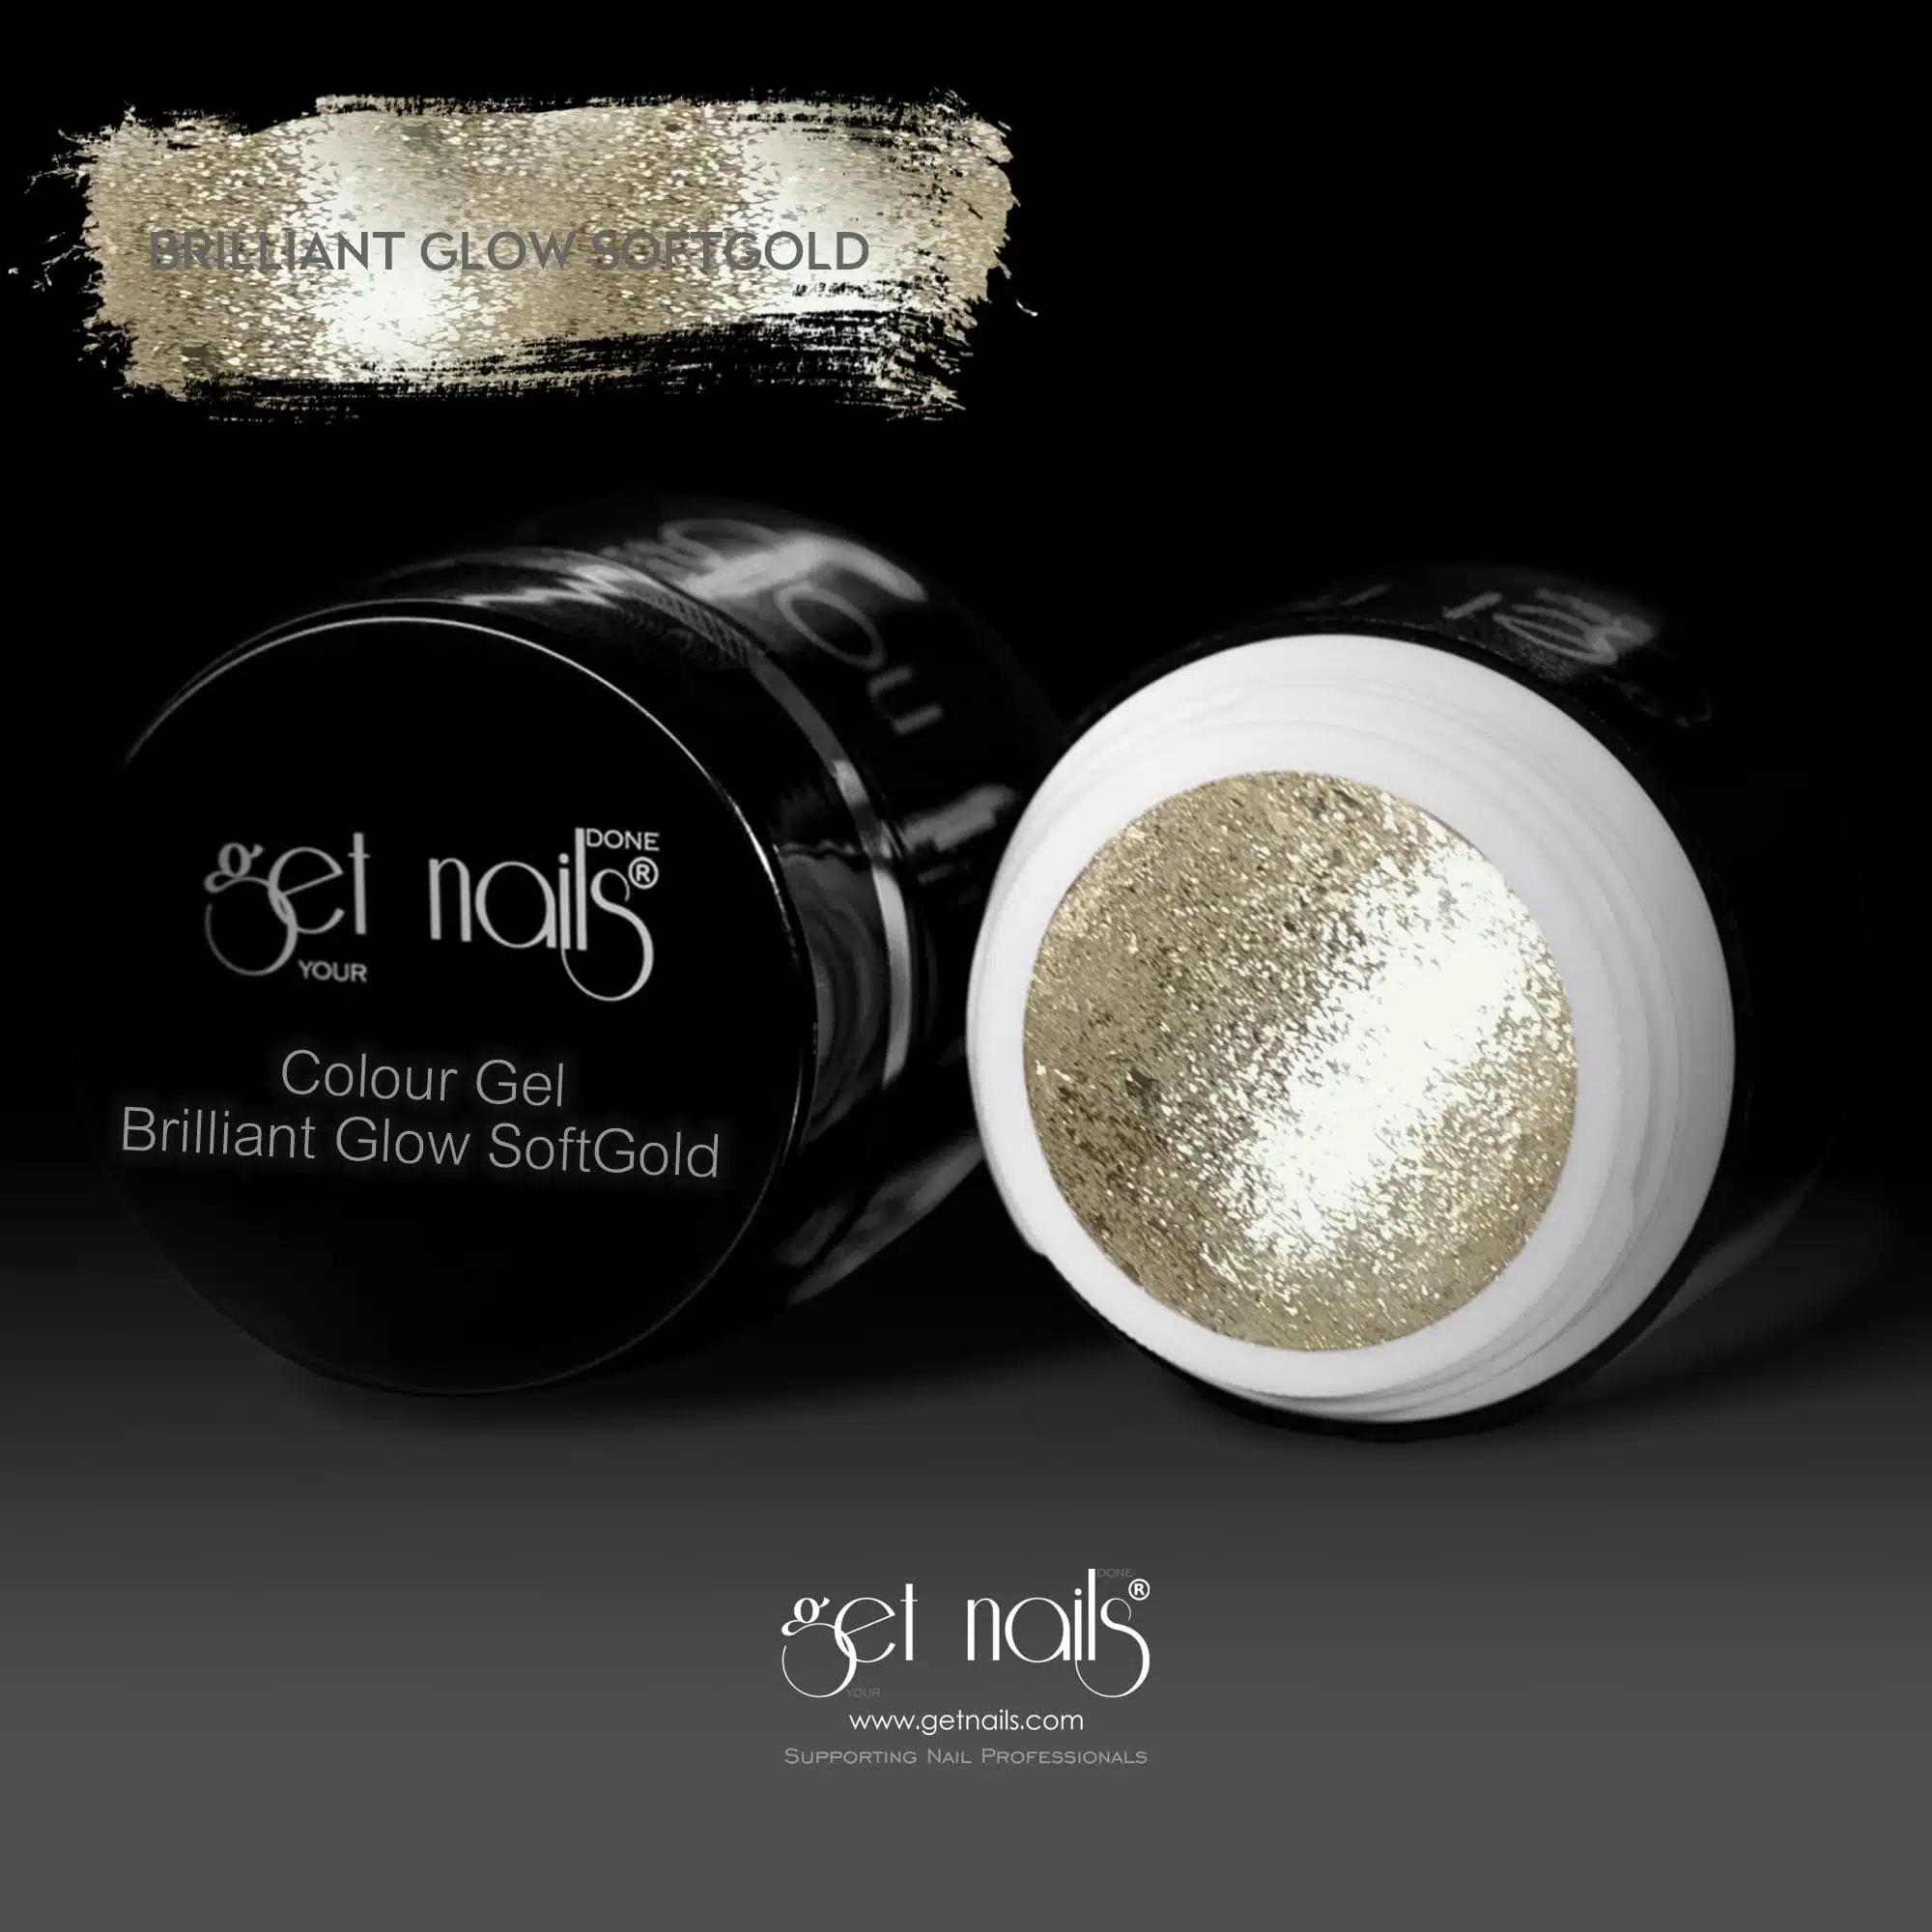 Get Nails Austria - Colour Gel Brilliant Glow Soft Gold 5g